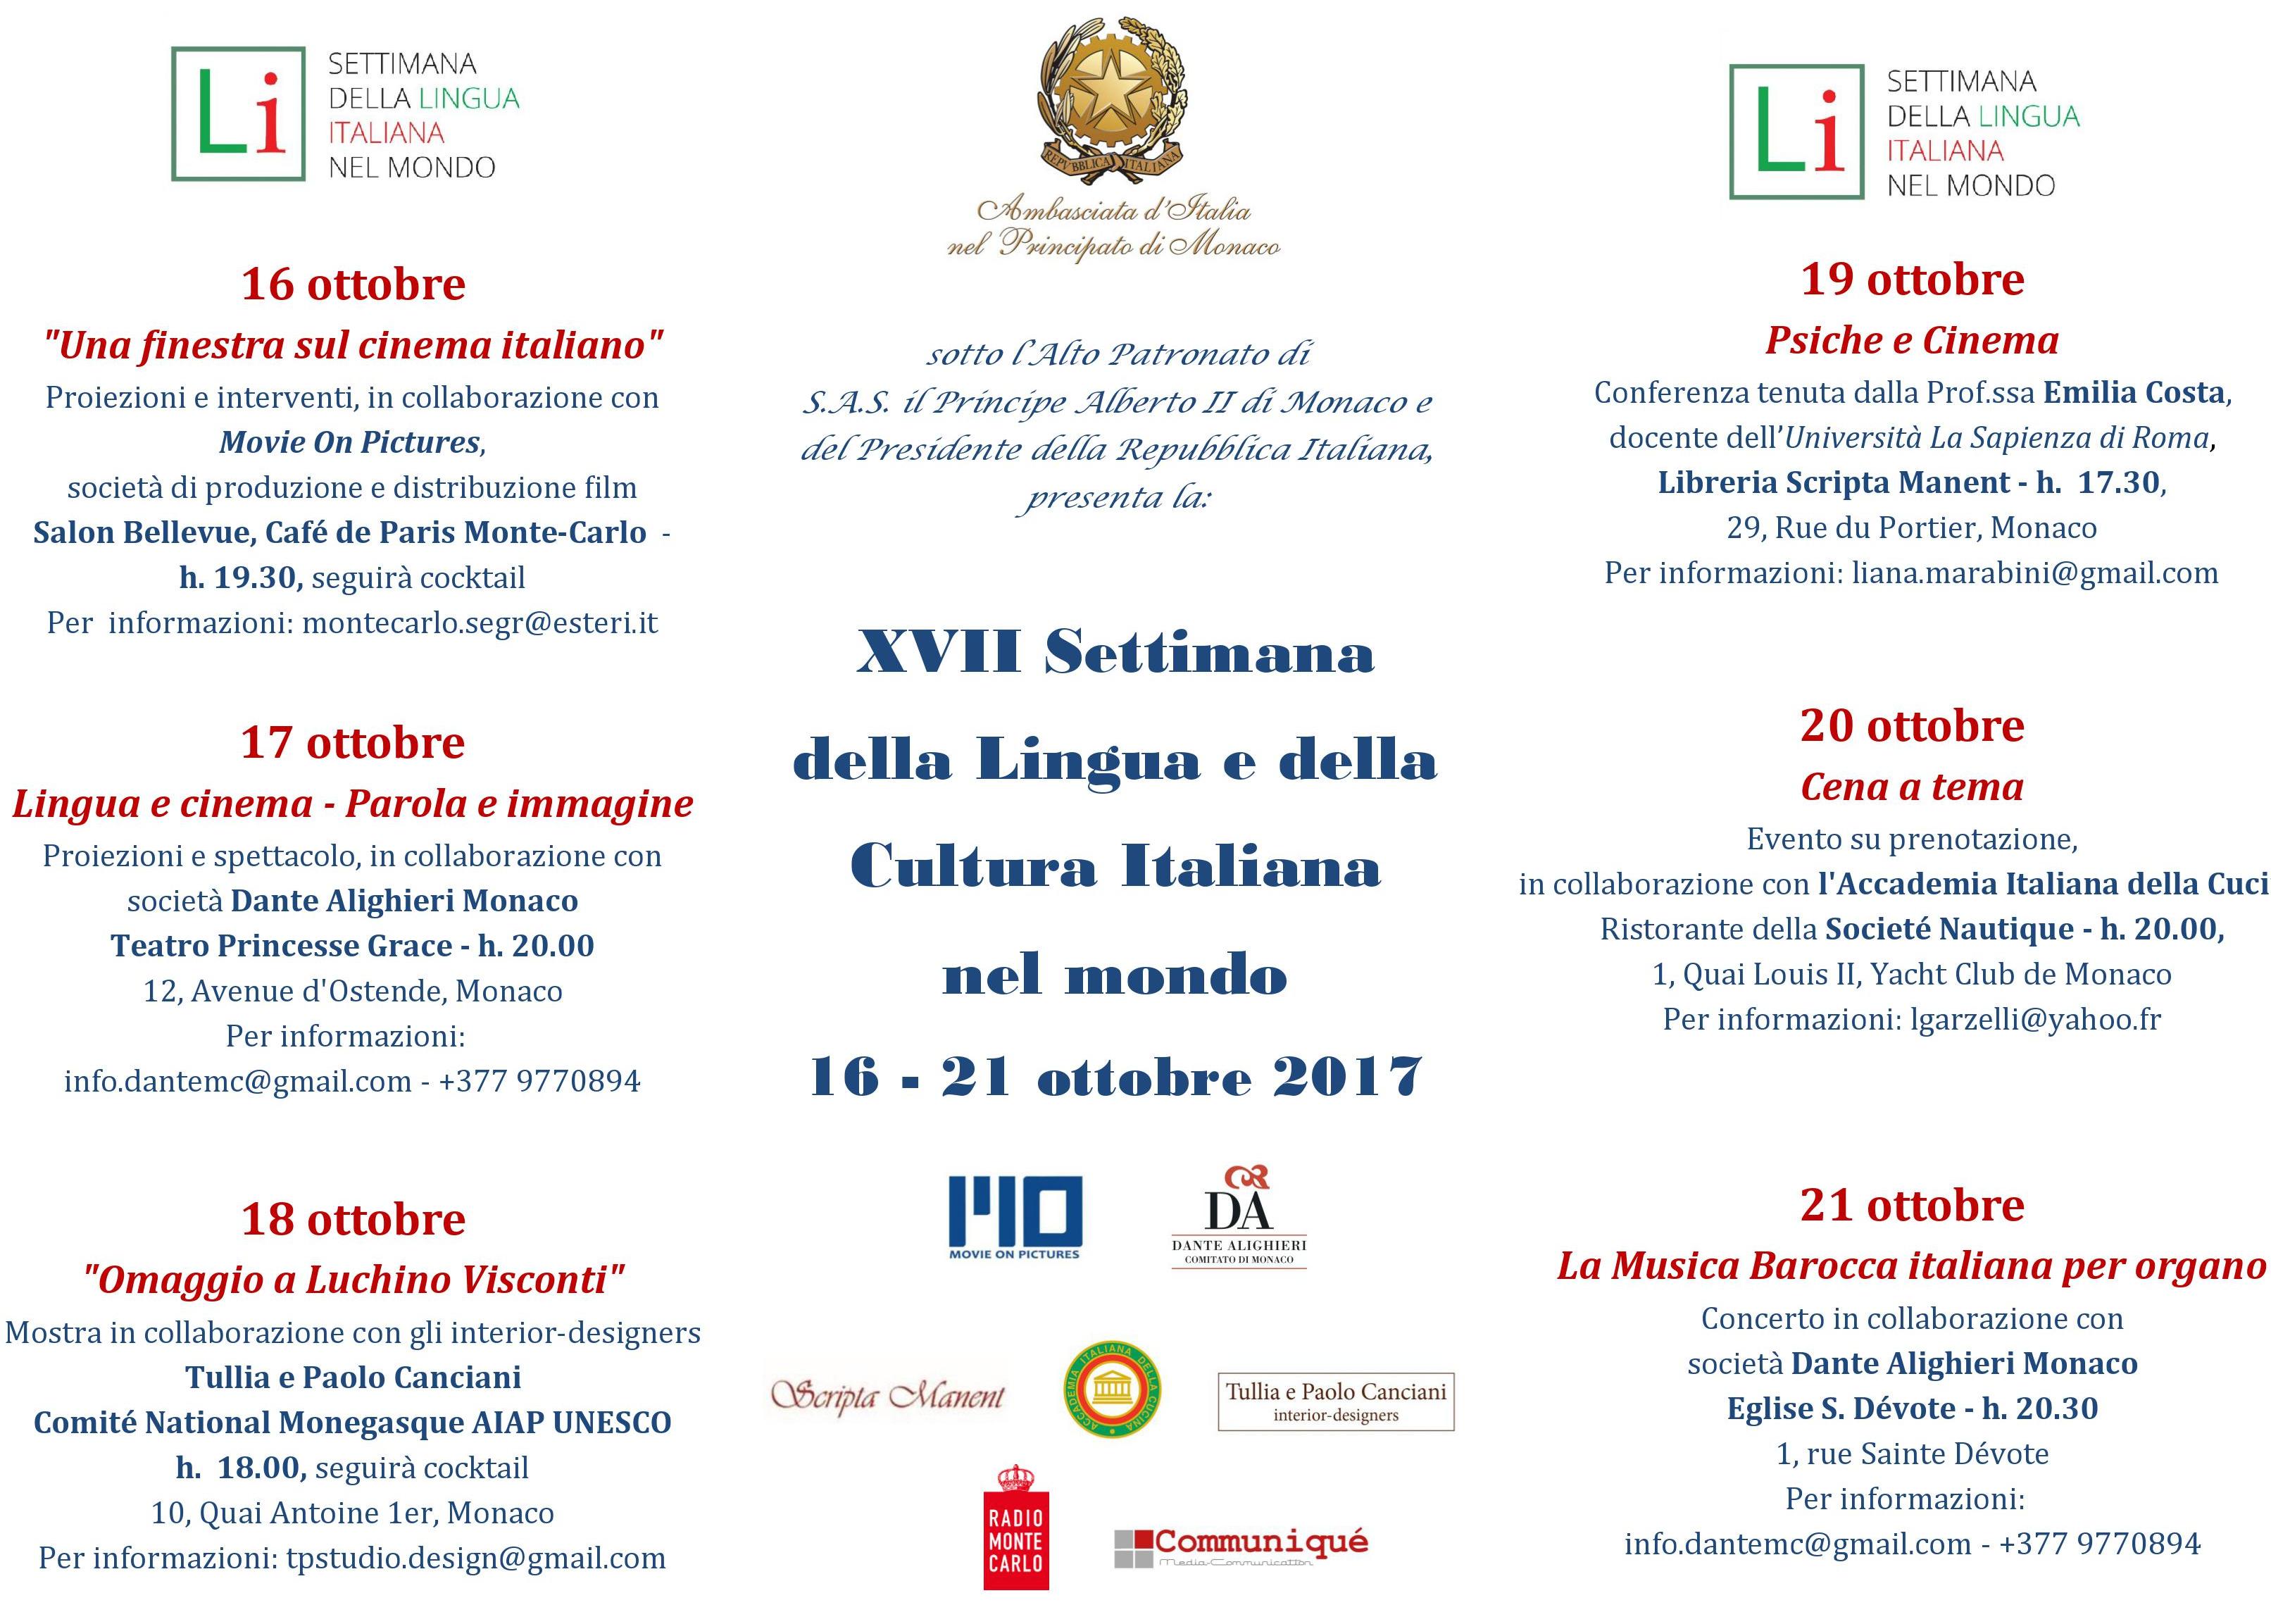 Il Programma della Settimana della Lingua e della Cultura Italiana a Monte Carlo